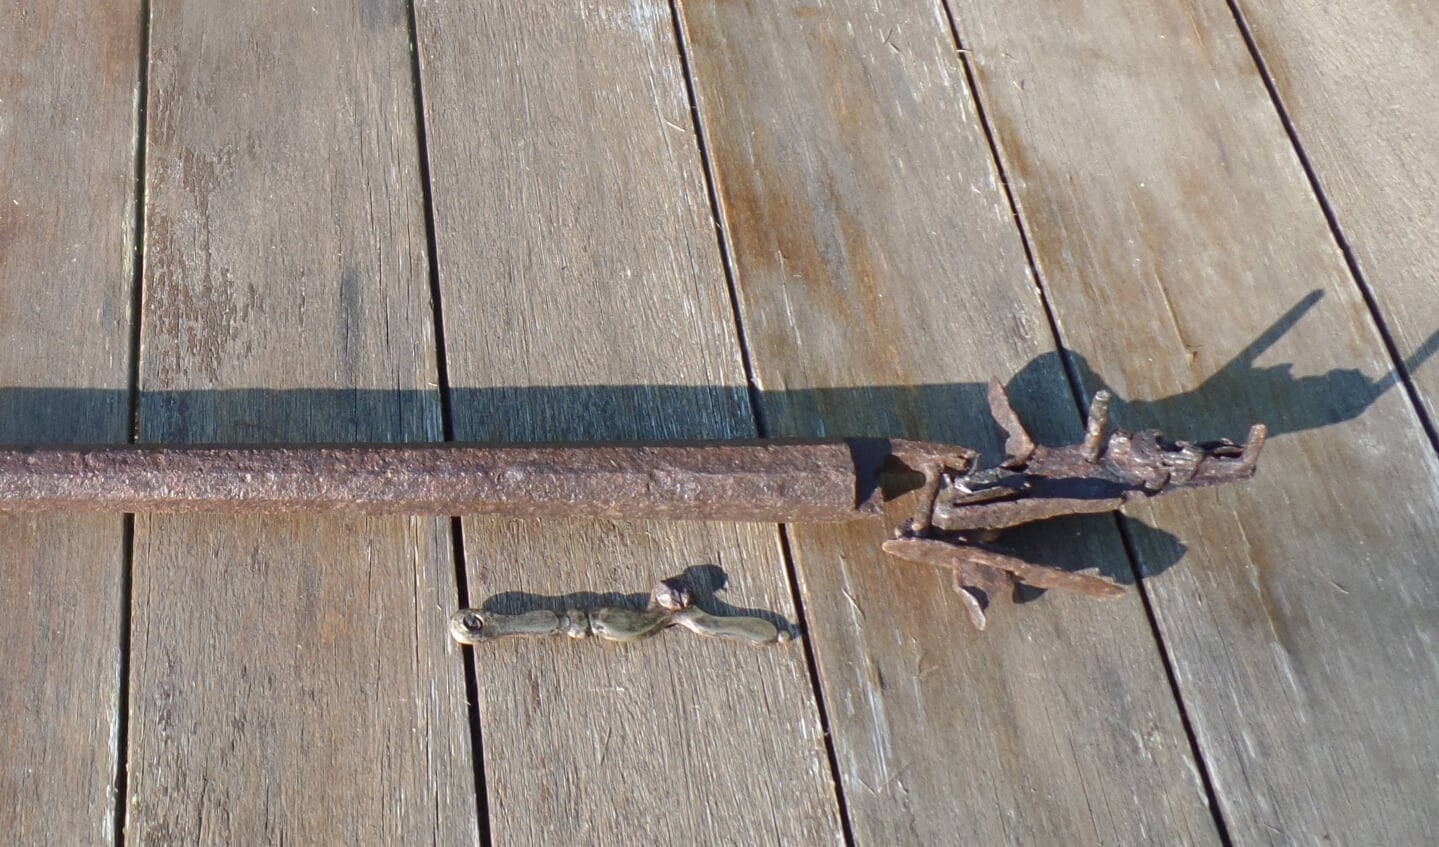 Het oudste geweer, waarvan alleen de metalen delen bewaard zijn gebleven na het lange verblijf in de bodem, behoort tot de laatste types met een vuursteenslot. Foto: Jan Hendriksen 